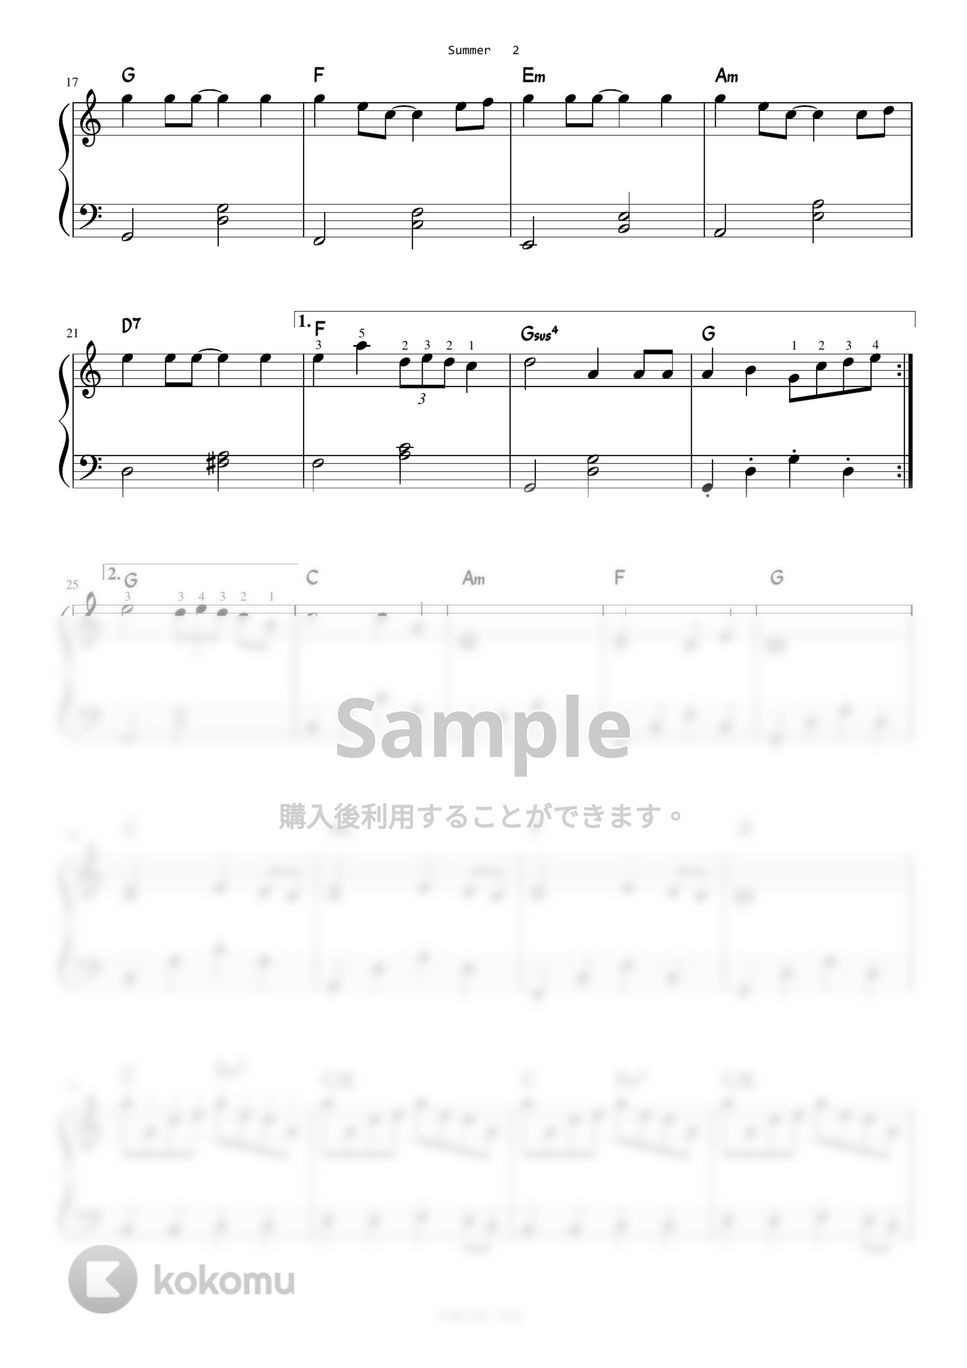 菊次郎の夏 - Summer (Level 2 - Easy) by A.Ha